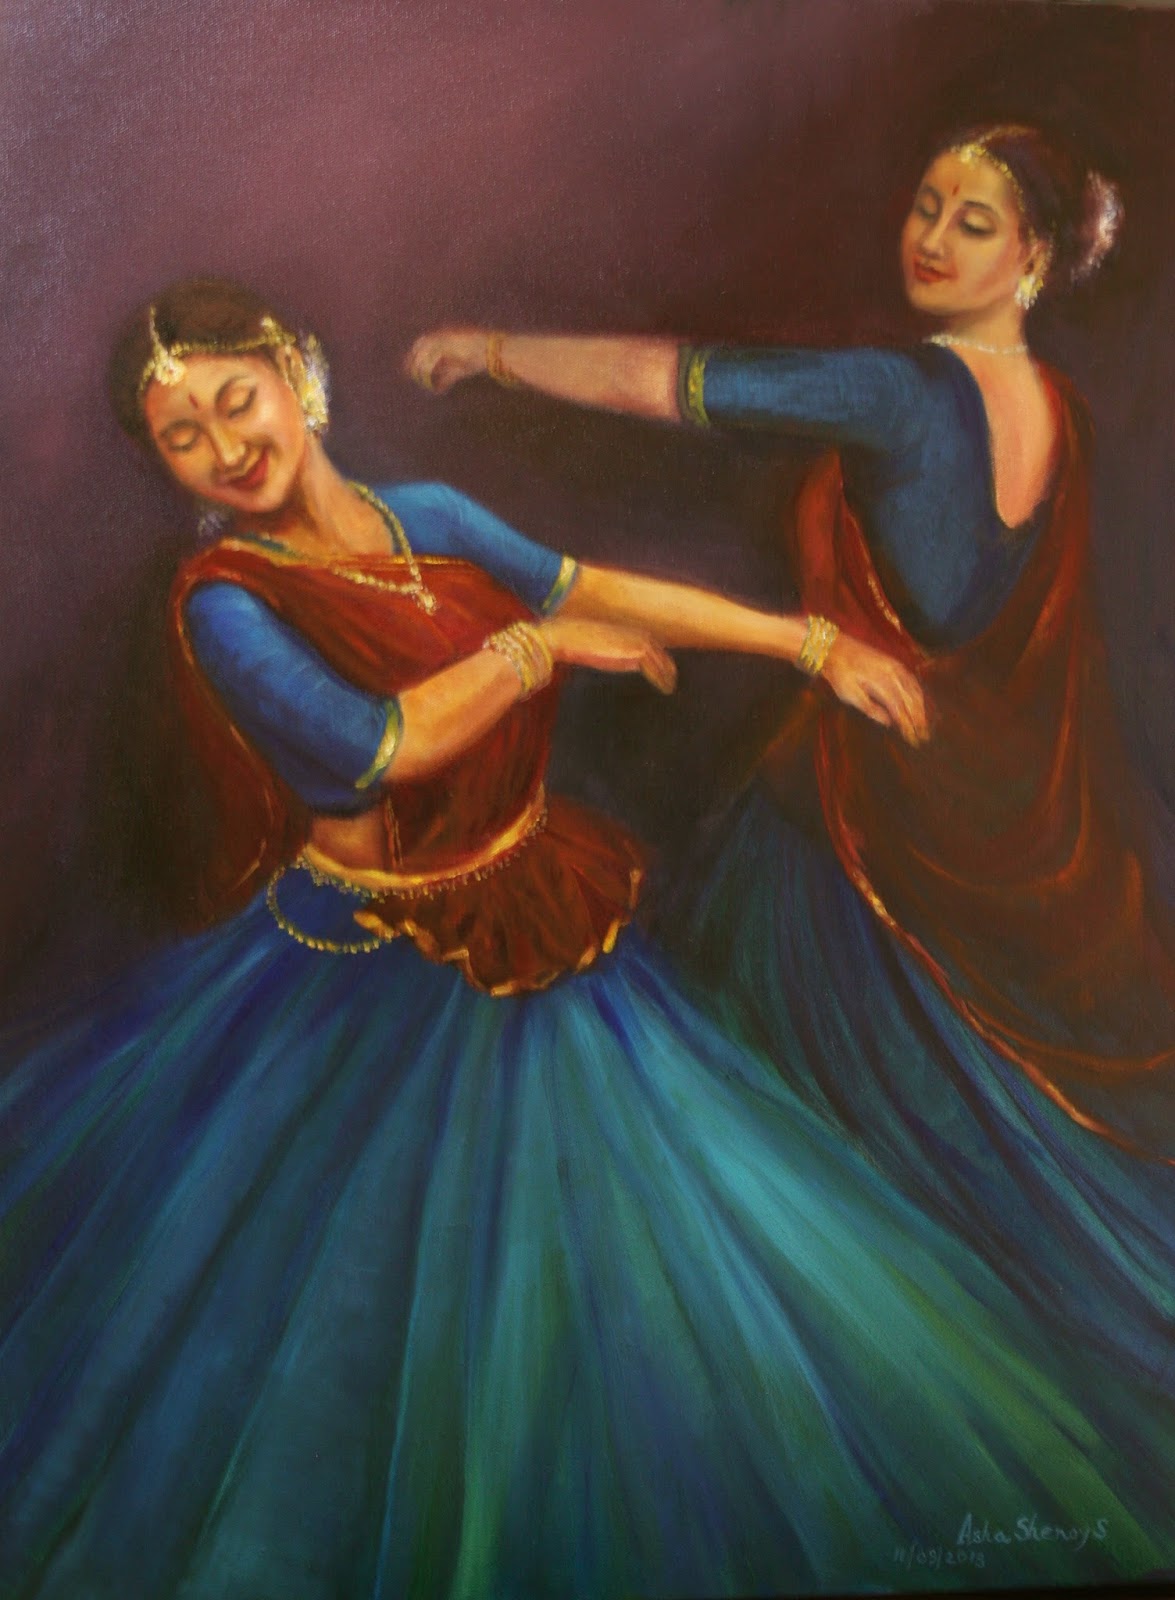 Painting by Asha Sudhaker Shenoy, Artist Profile at Art Scene India, Image cortesy artist